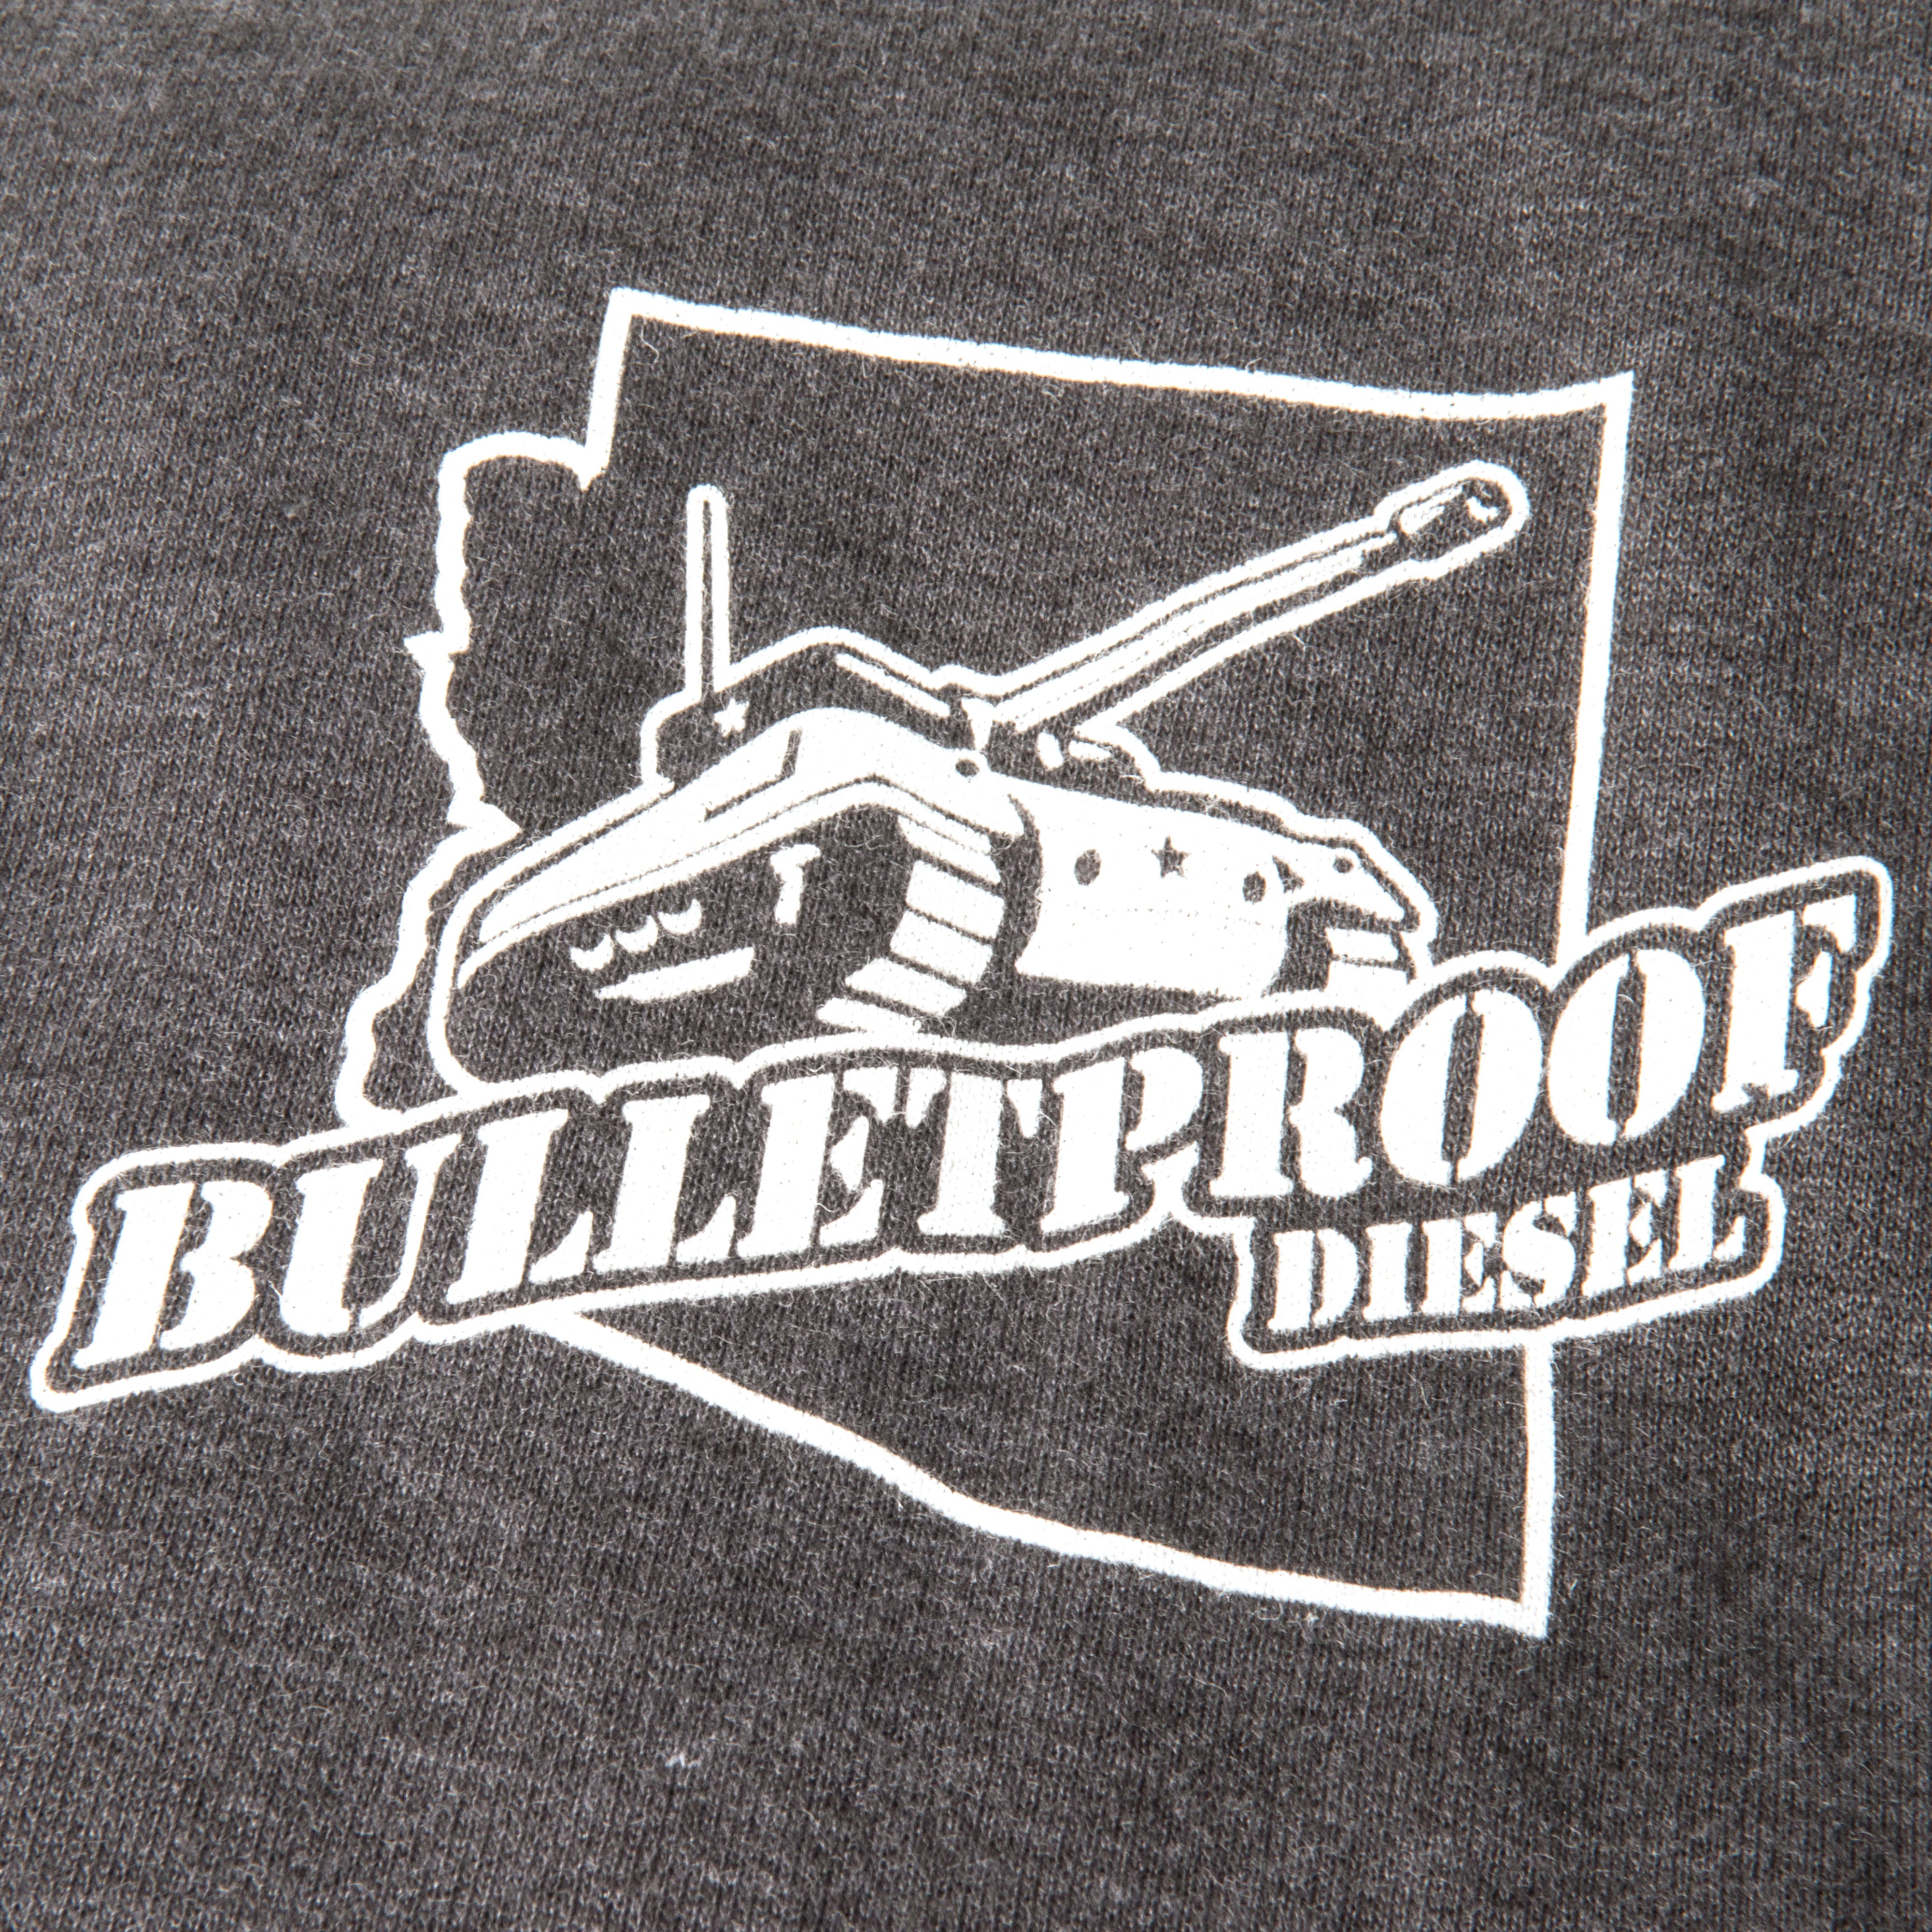 Bullet Proof Diesel Tank Hoody